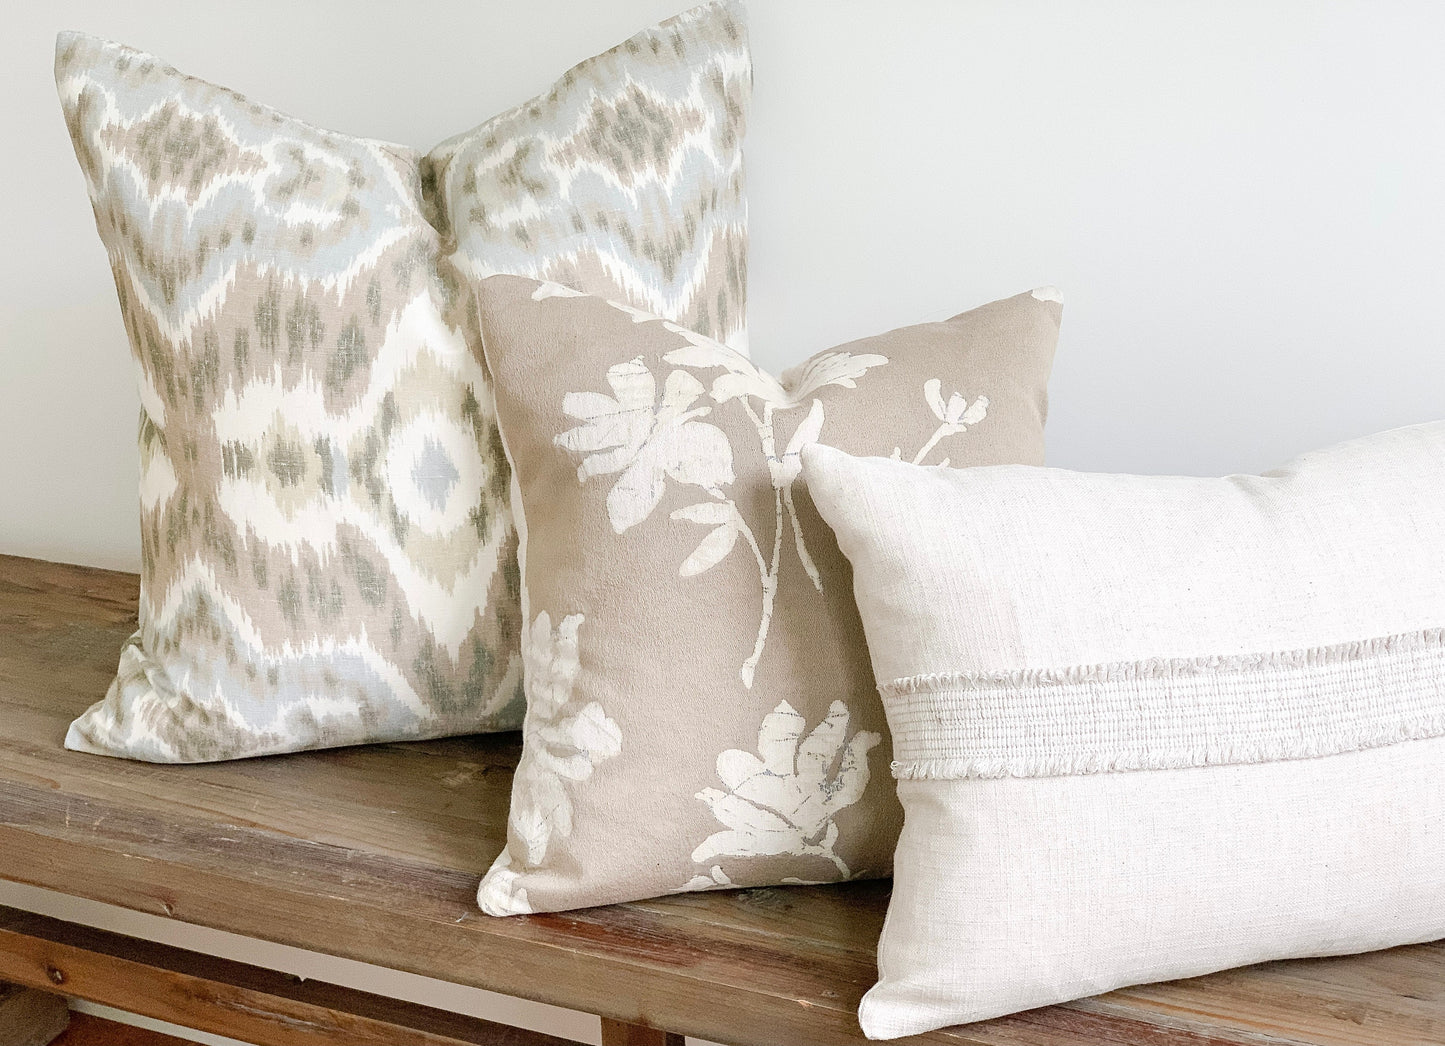 14 x 20 Linen lumbar pillow with decorative tape